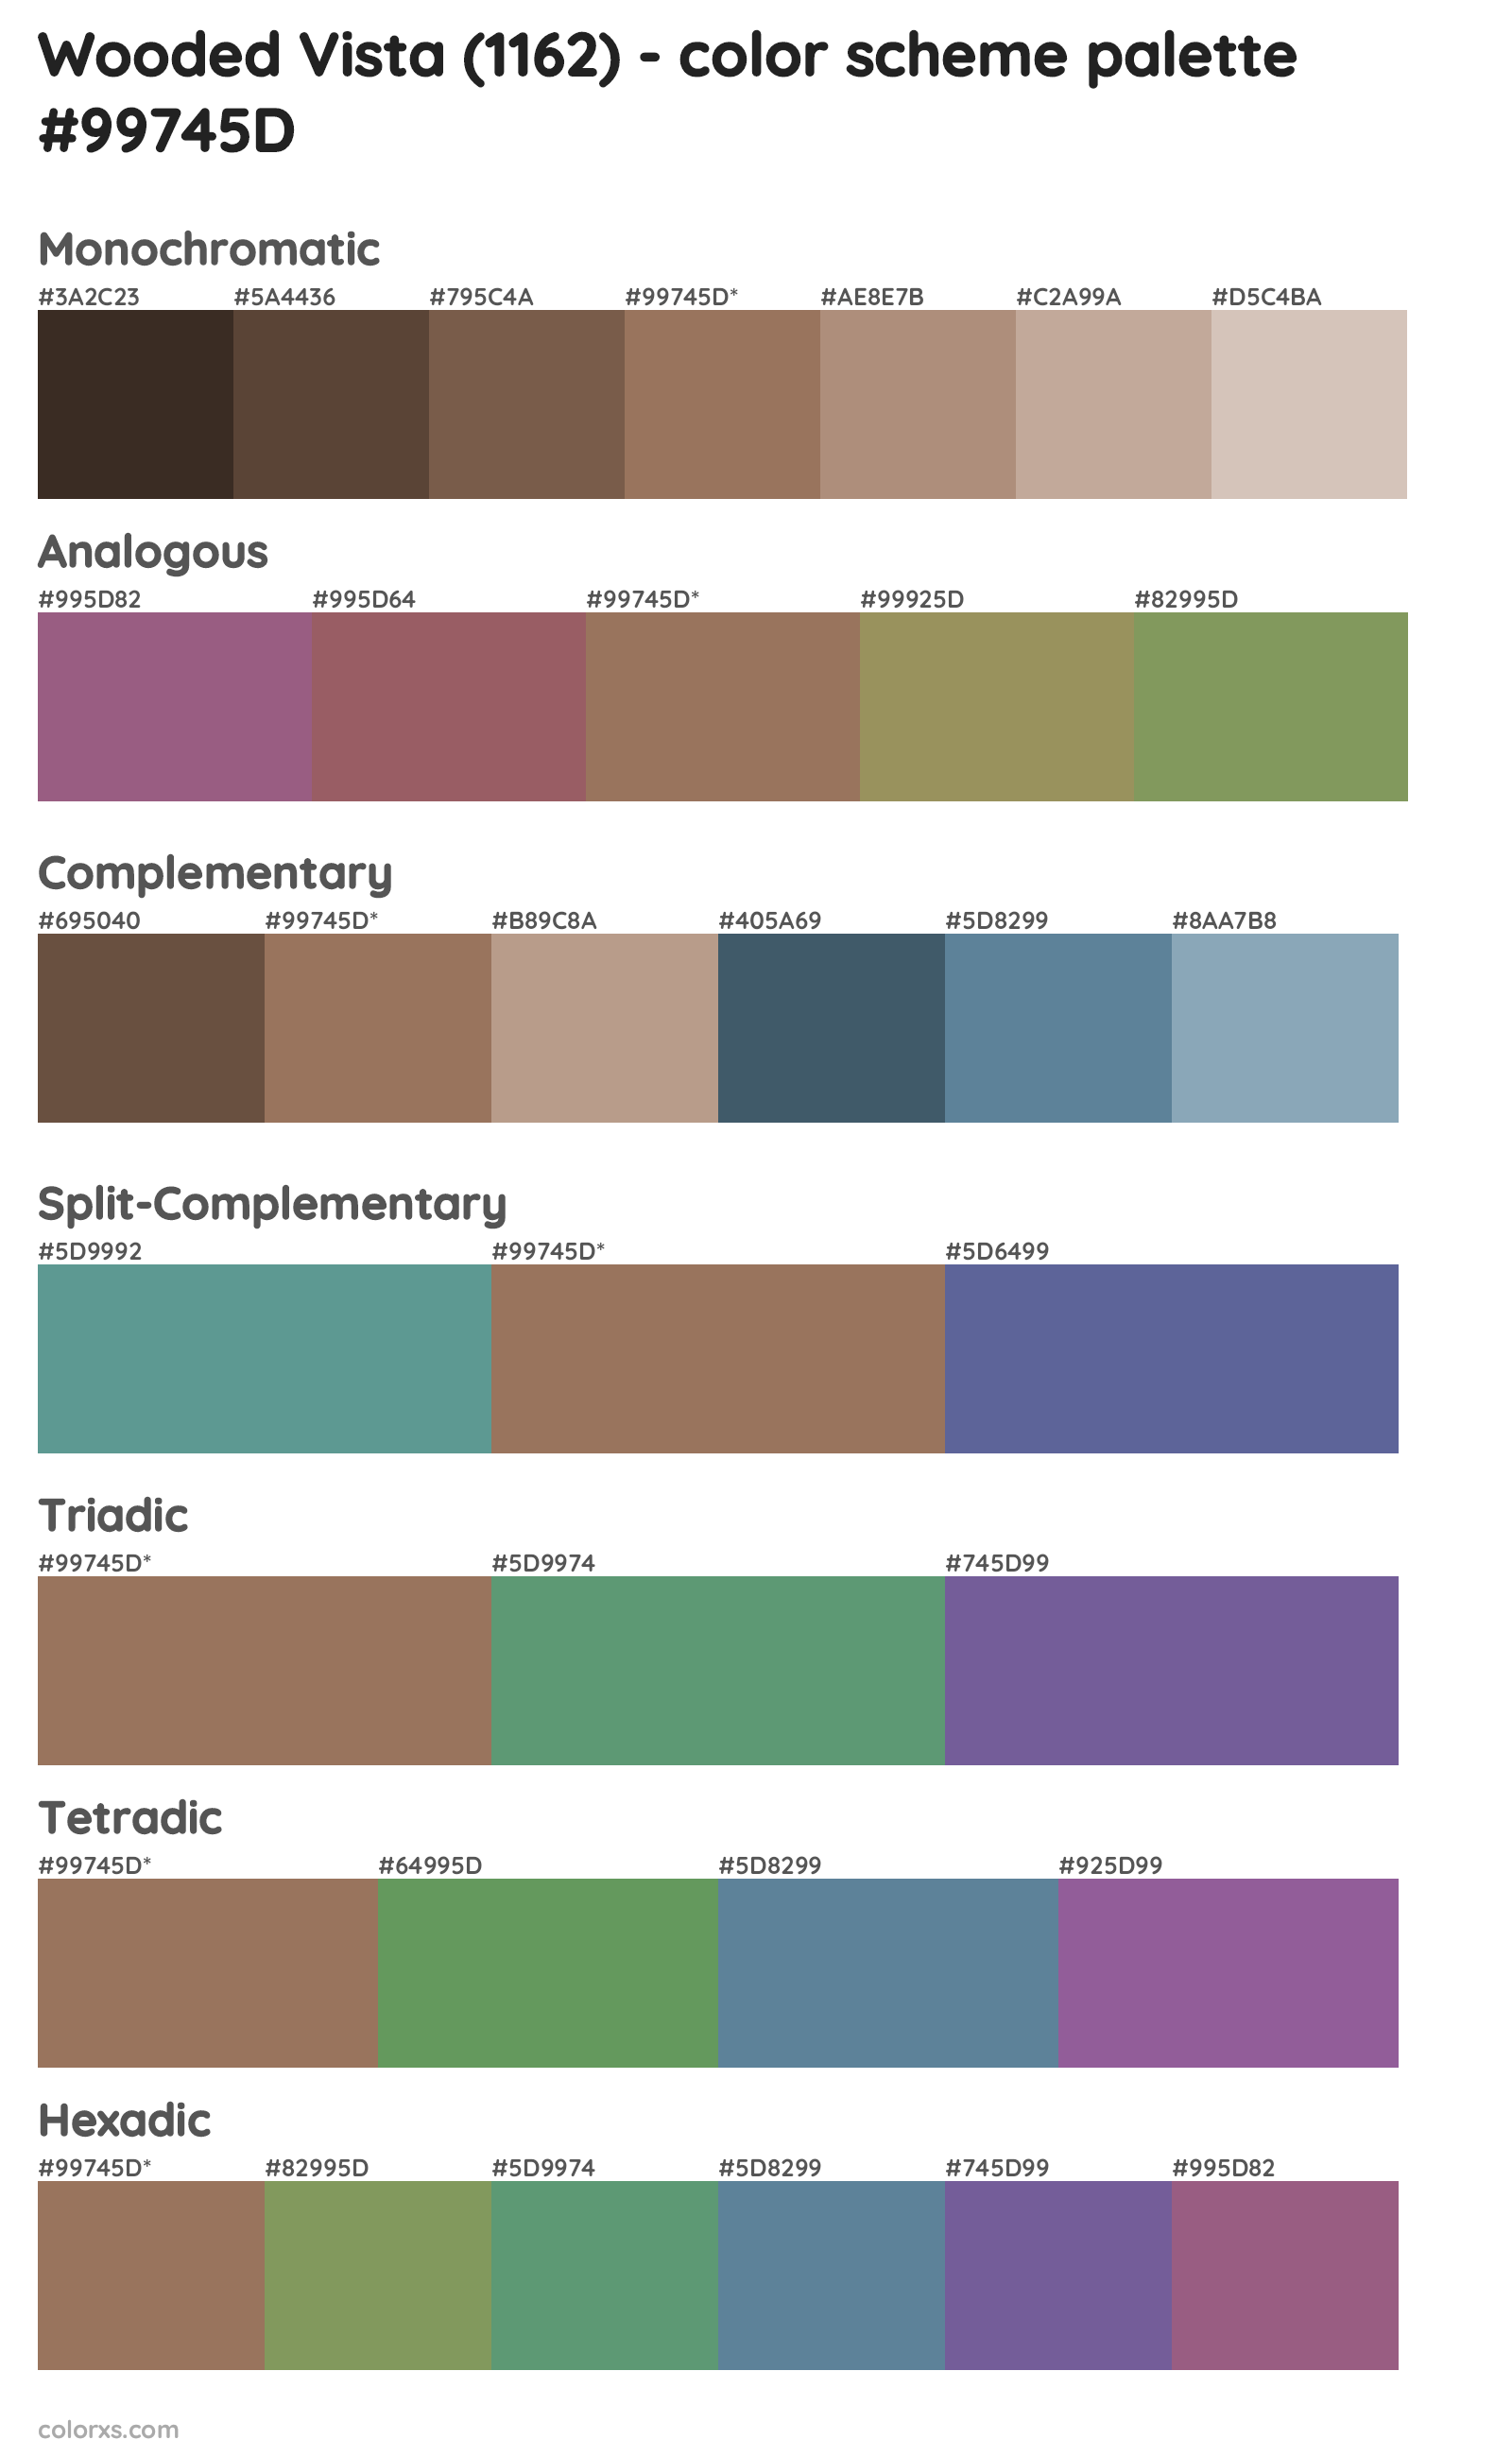 Wooded Vista (1162) Color Scheme Palettes